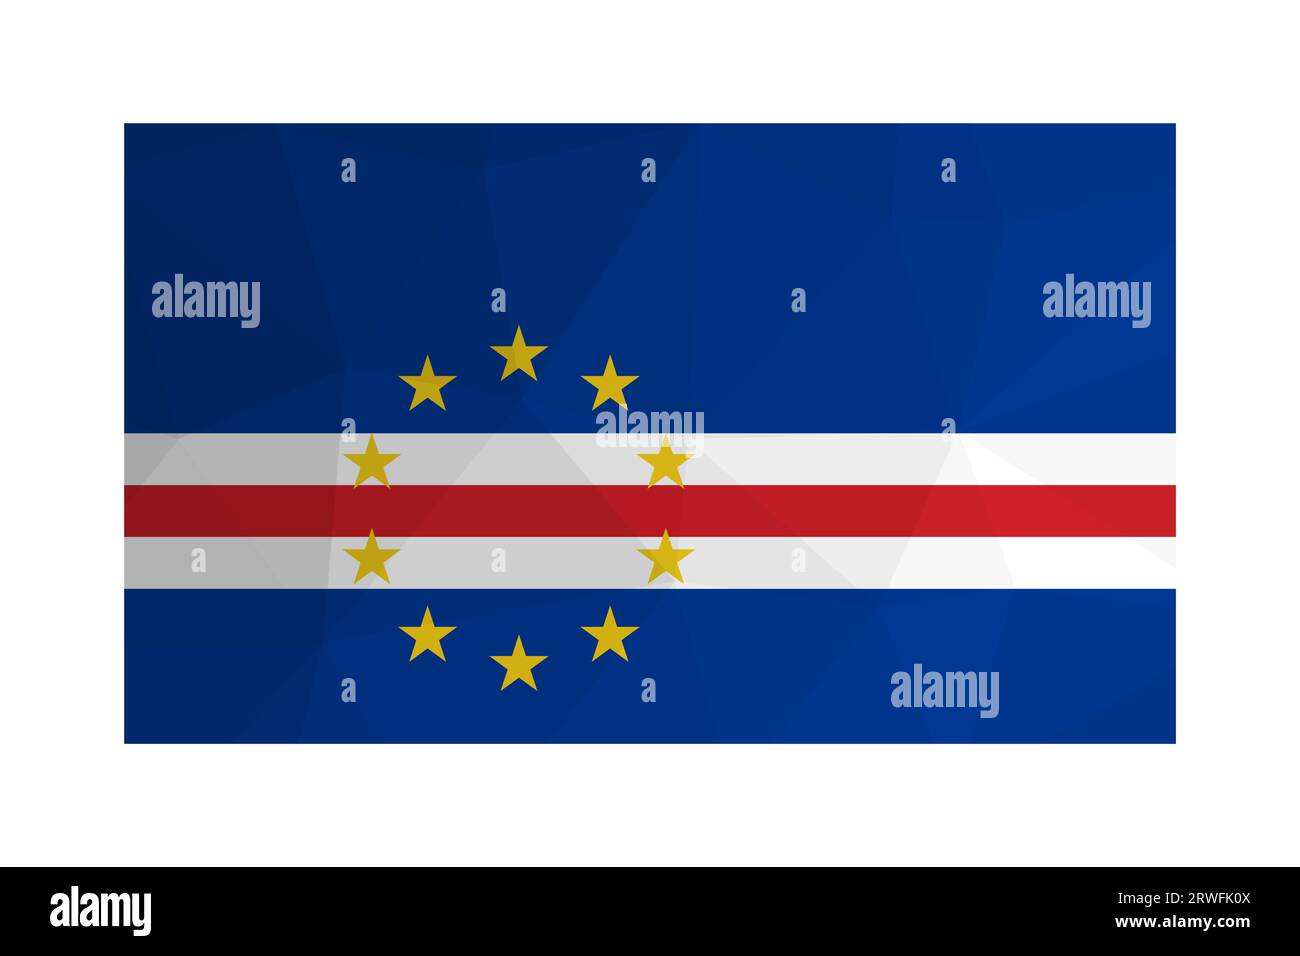 Illustration isolée vectorielle. Drapeau national Cabo Verde avec des rayures bleues, rouges, blanches et des étoiles jaunes. Symbole officiel du Cap-Vert. Design créatif Illustration de Vecteur